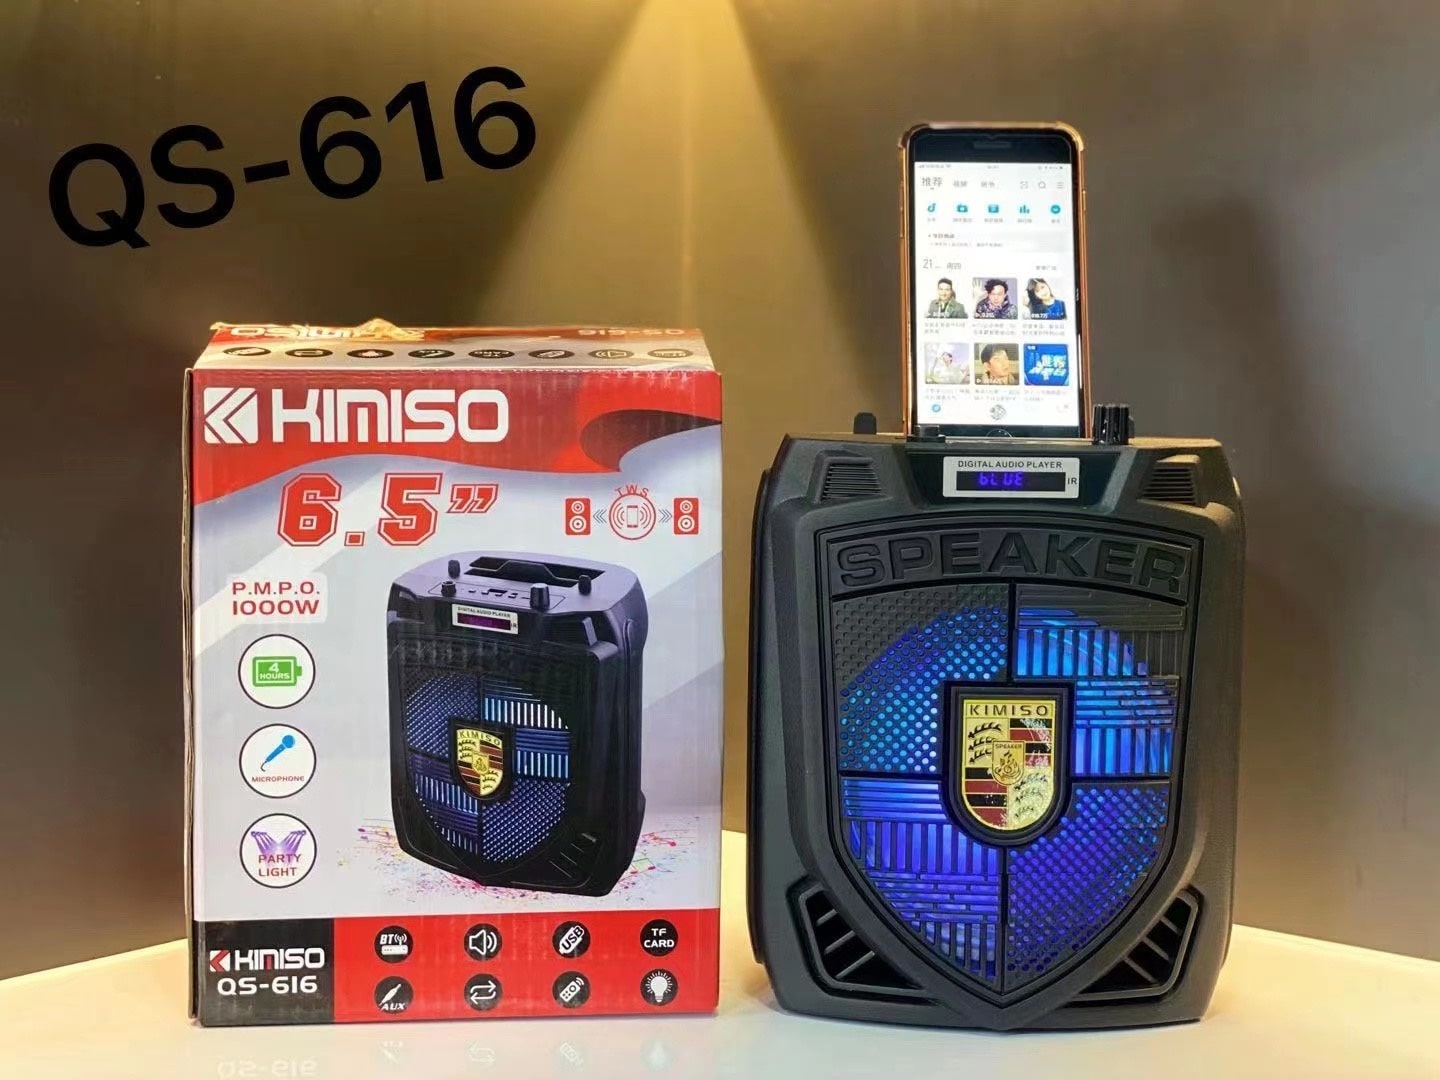 خرید اسپیکر چمدانی بلوتوثی رم و فلش خور Kimiso QS-616 + ریموت کنترل